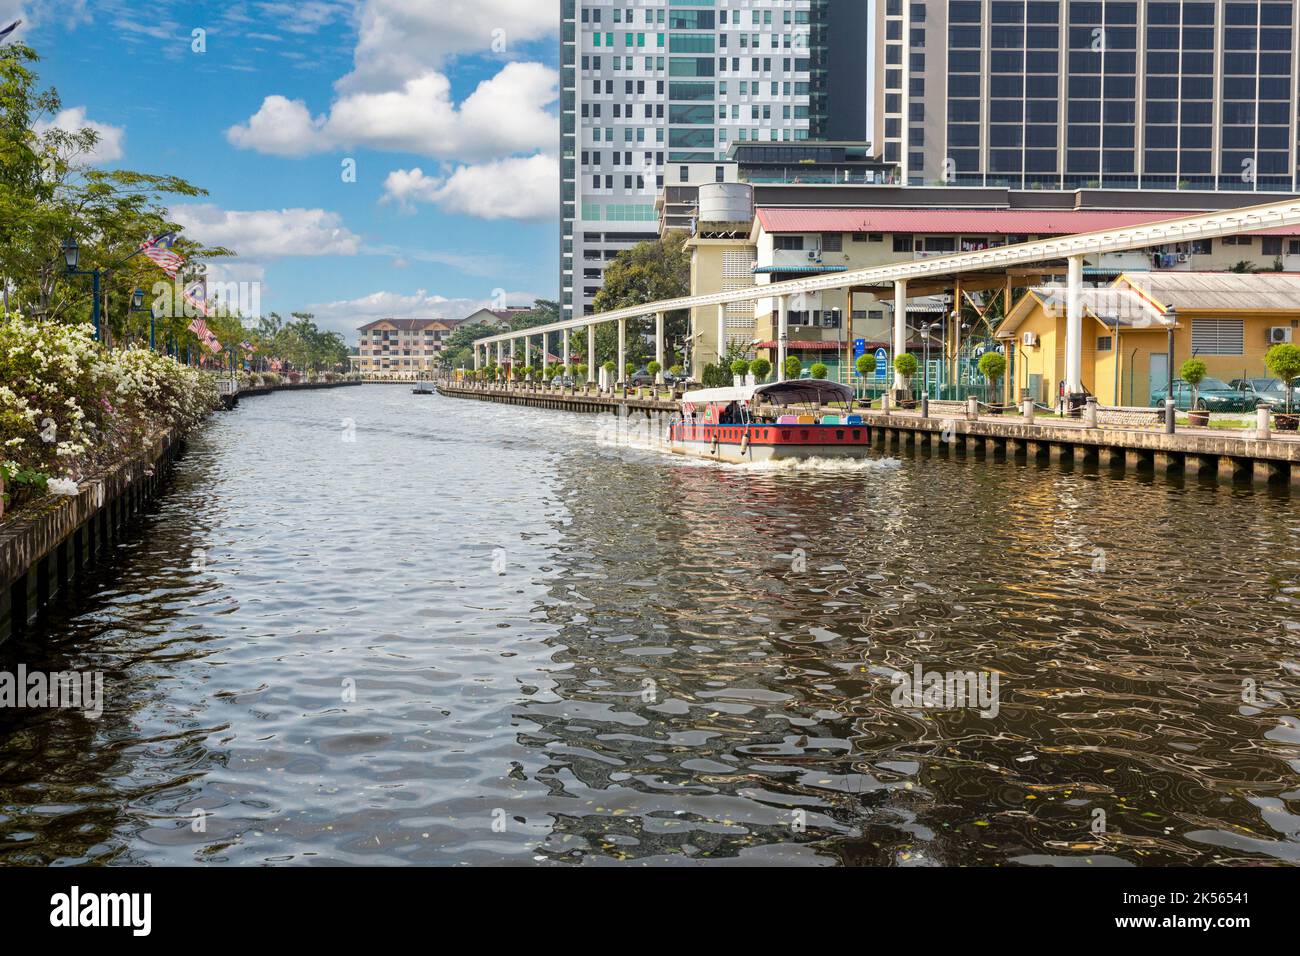 Water Taxi on Melaka River, Melaka, Malaysia. Stock Photo